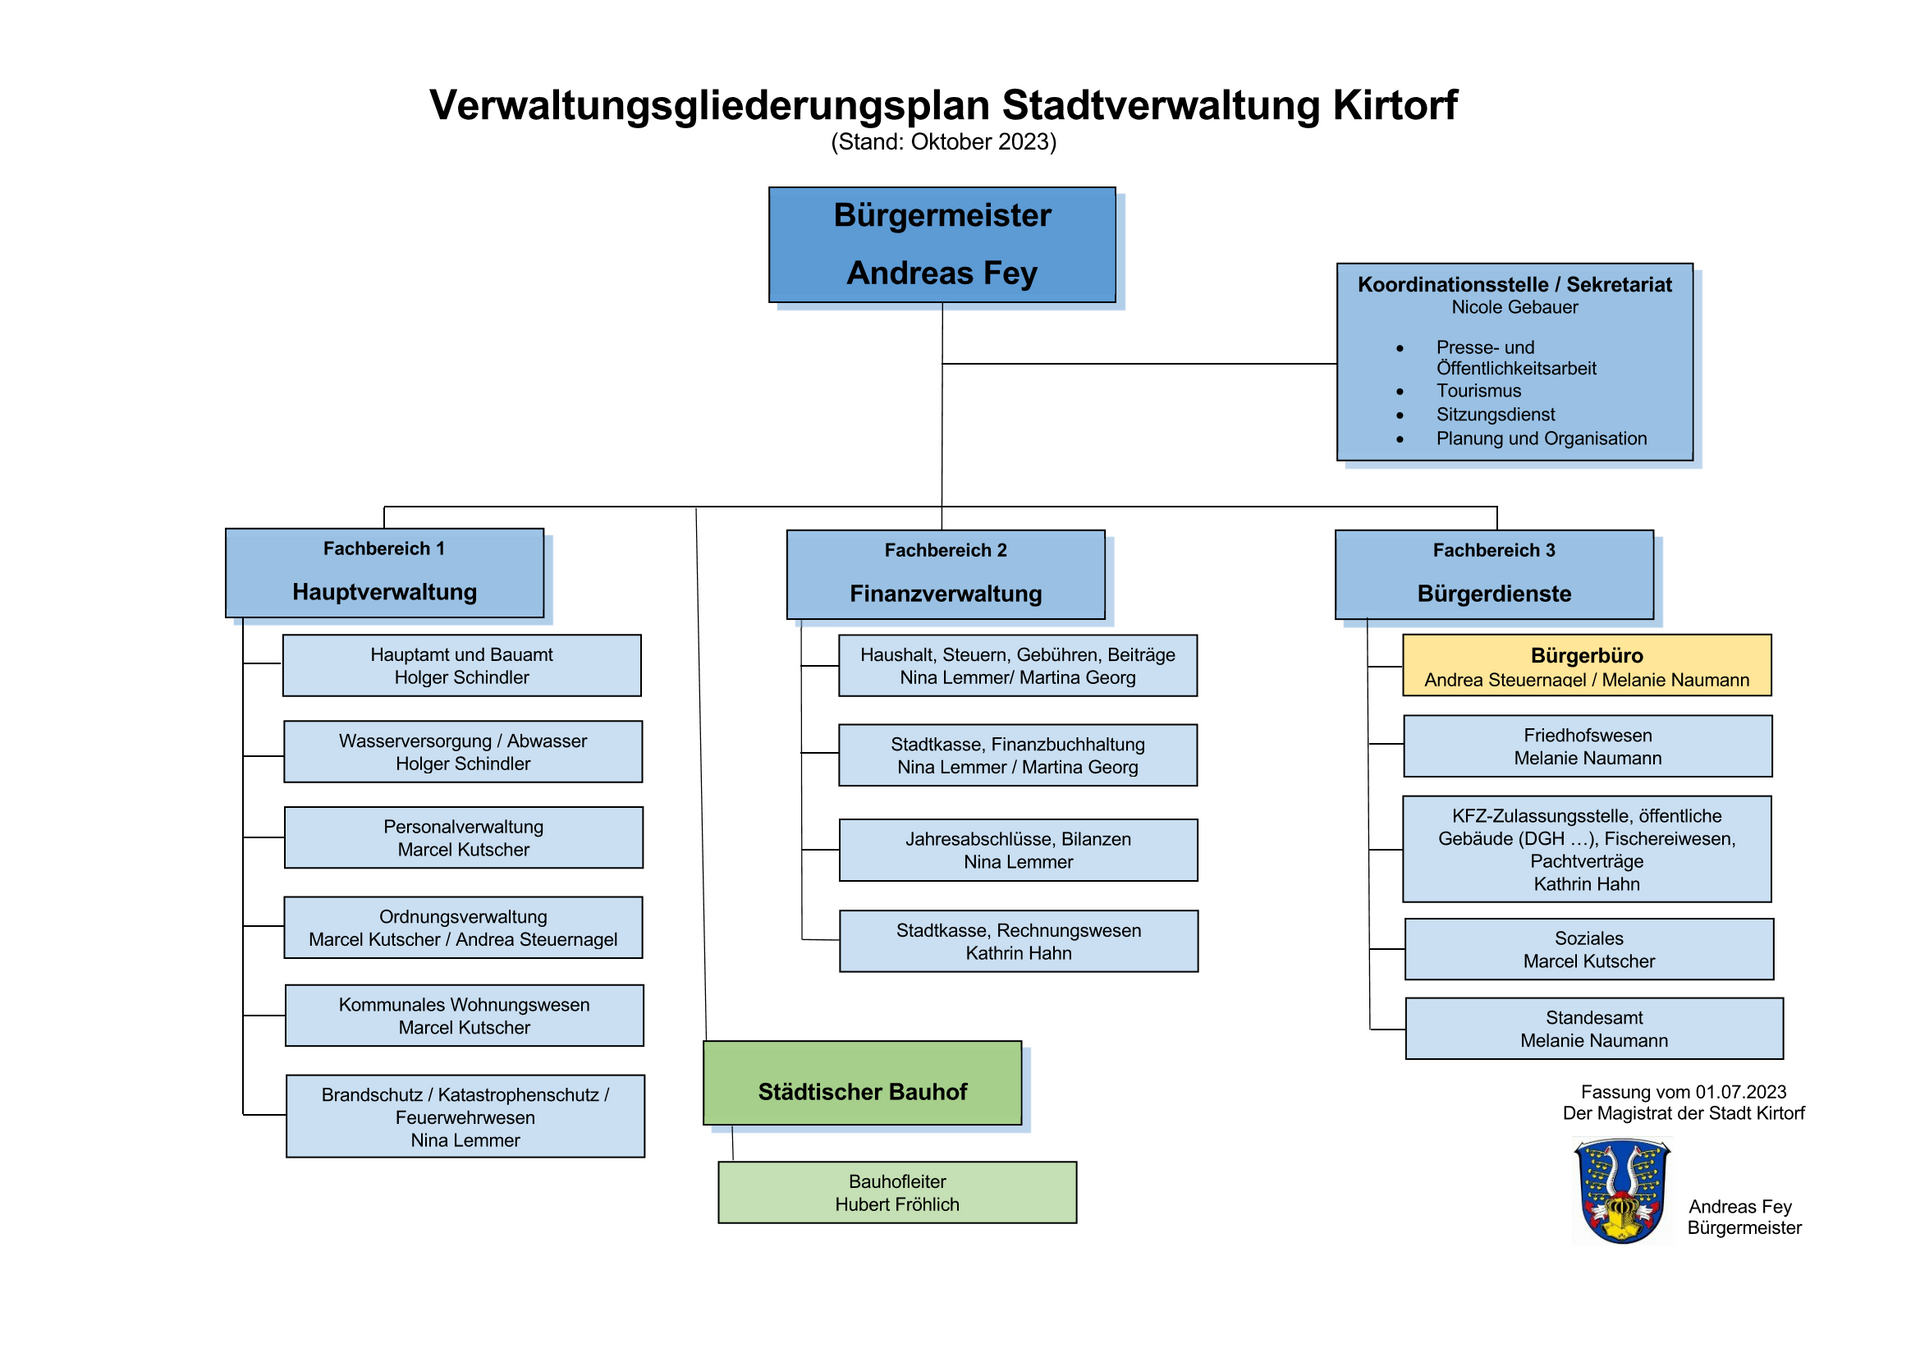 Grafik Verwaltungsgliederung der Stadtverwaltung Kirtorf mit den Fachbereichen